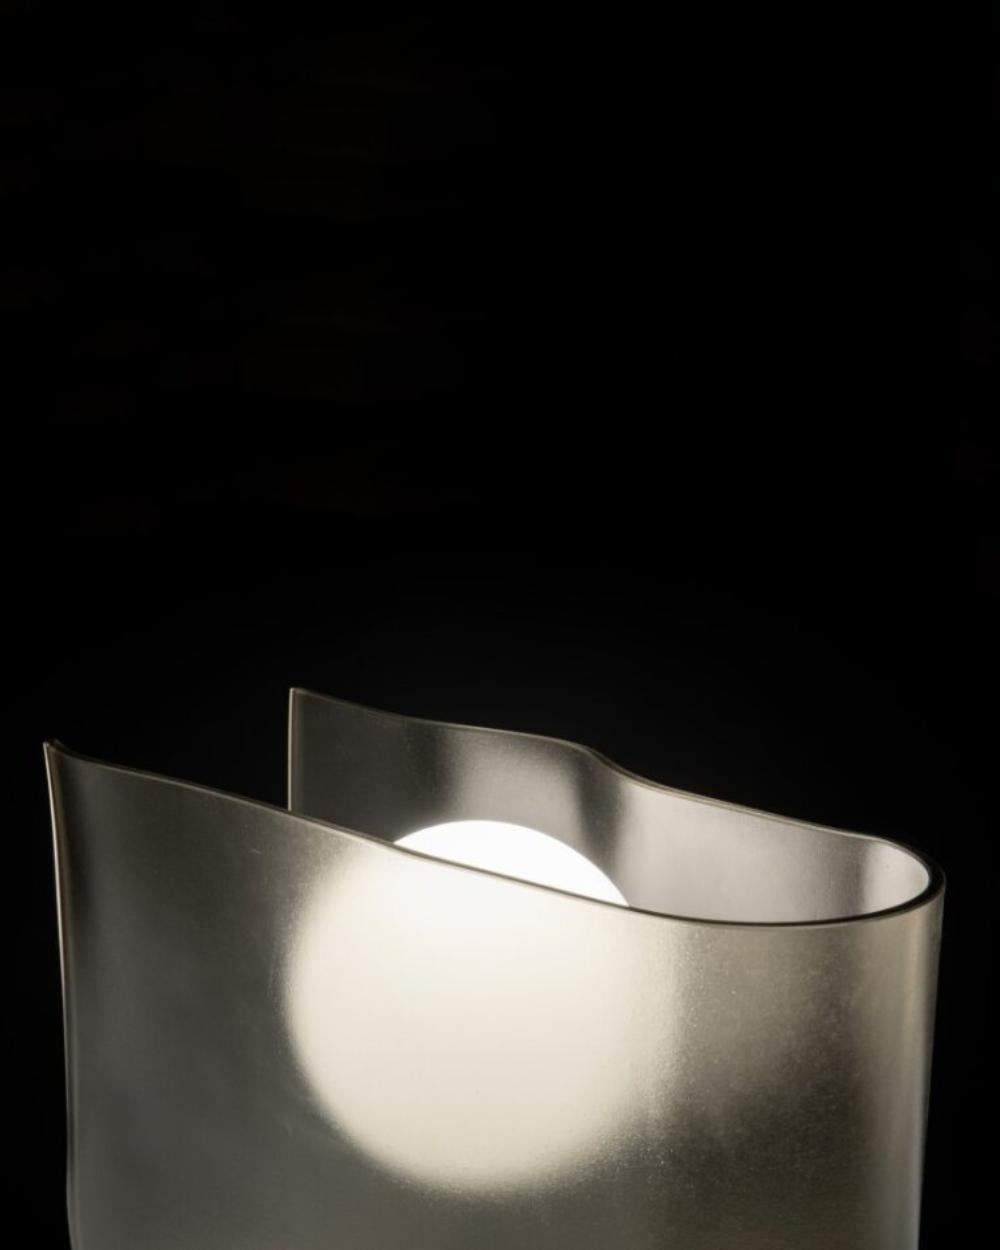 Capturant la douce lueur du crépuscule, la collection Dusk intègre une feuille de verre bronzé pliée avec une source lumineuse sphérique. Rendant hommage au symbolisme profond de la descente du soleil dans l'héritage culturel japonais, la